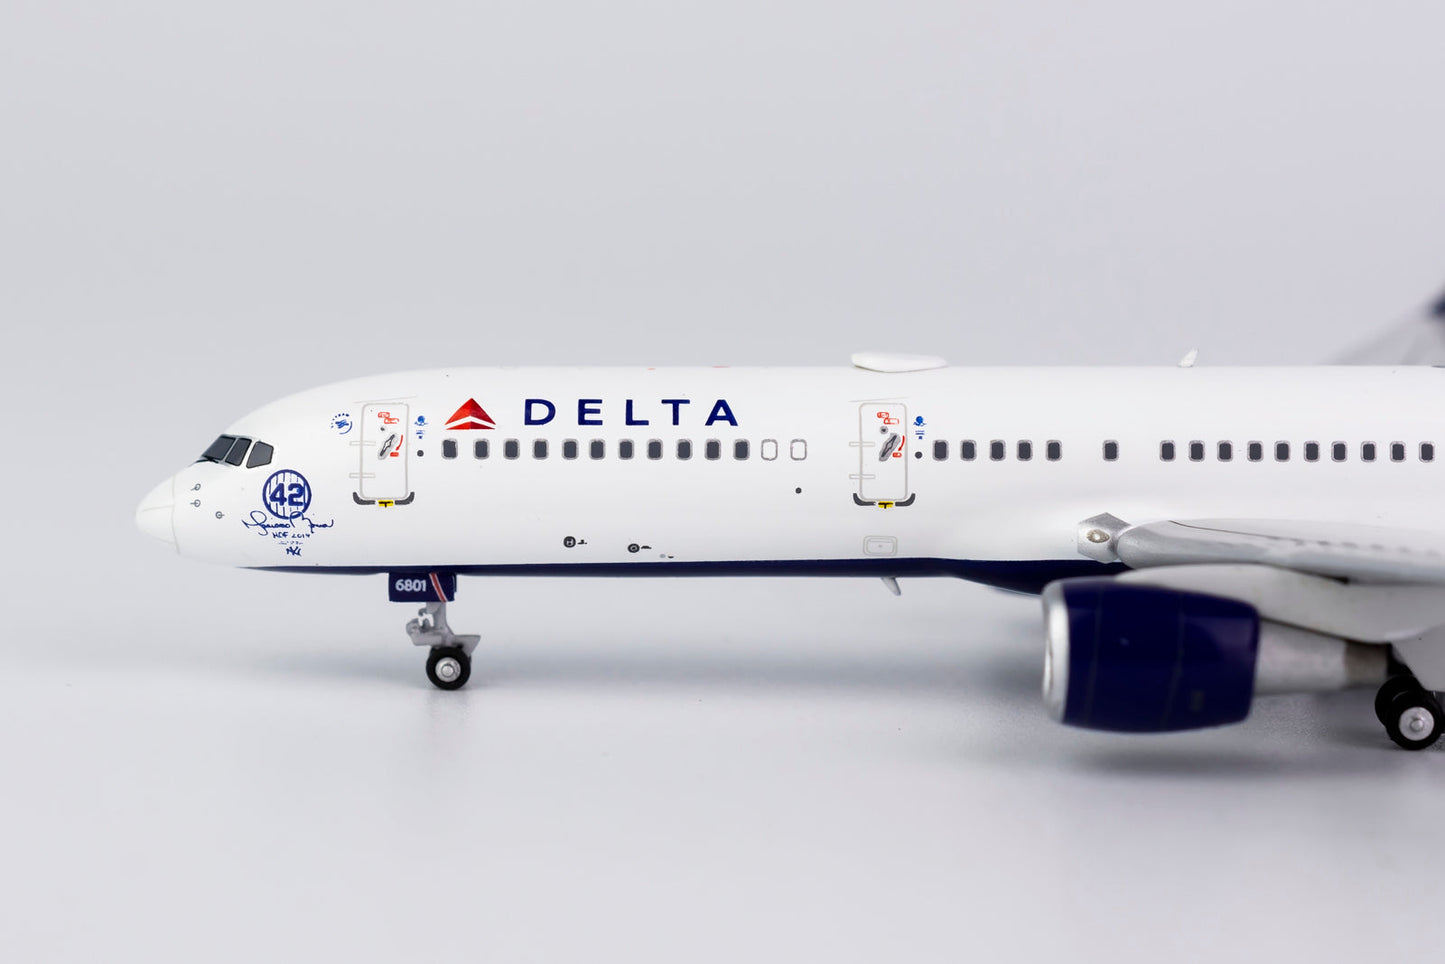 1/400 Delta Airlines B 757-200/w "42 Mariano Rivera" NG Models 53187